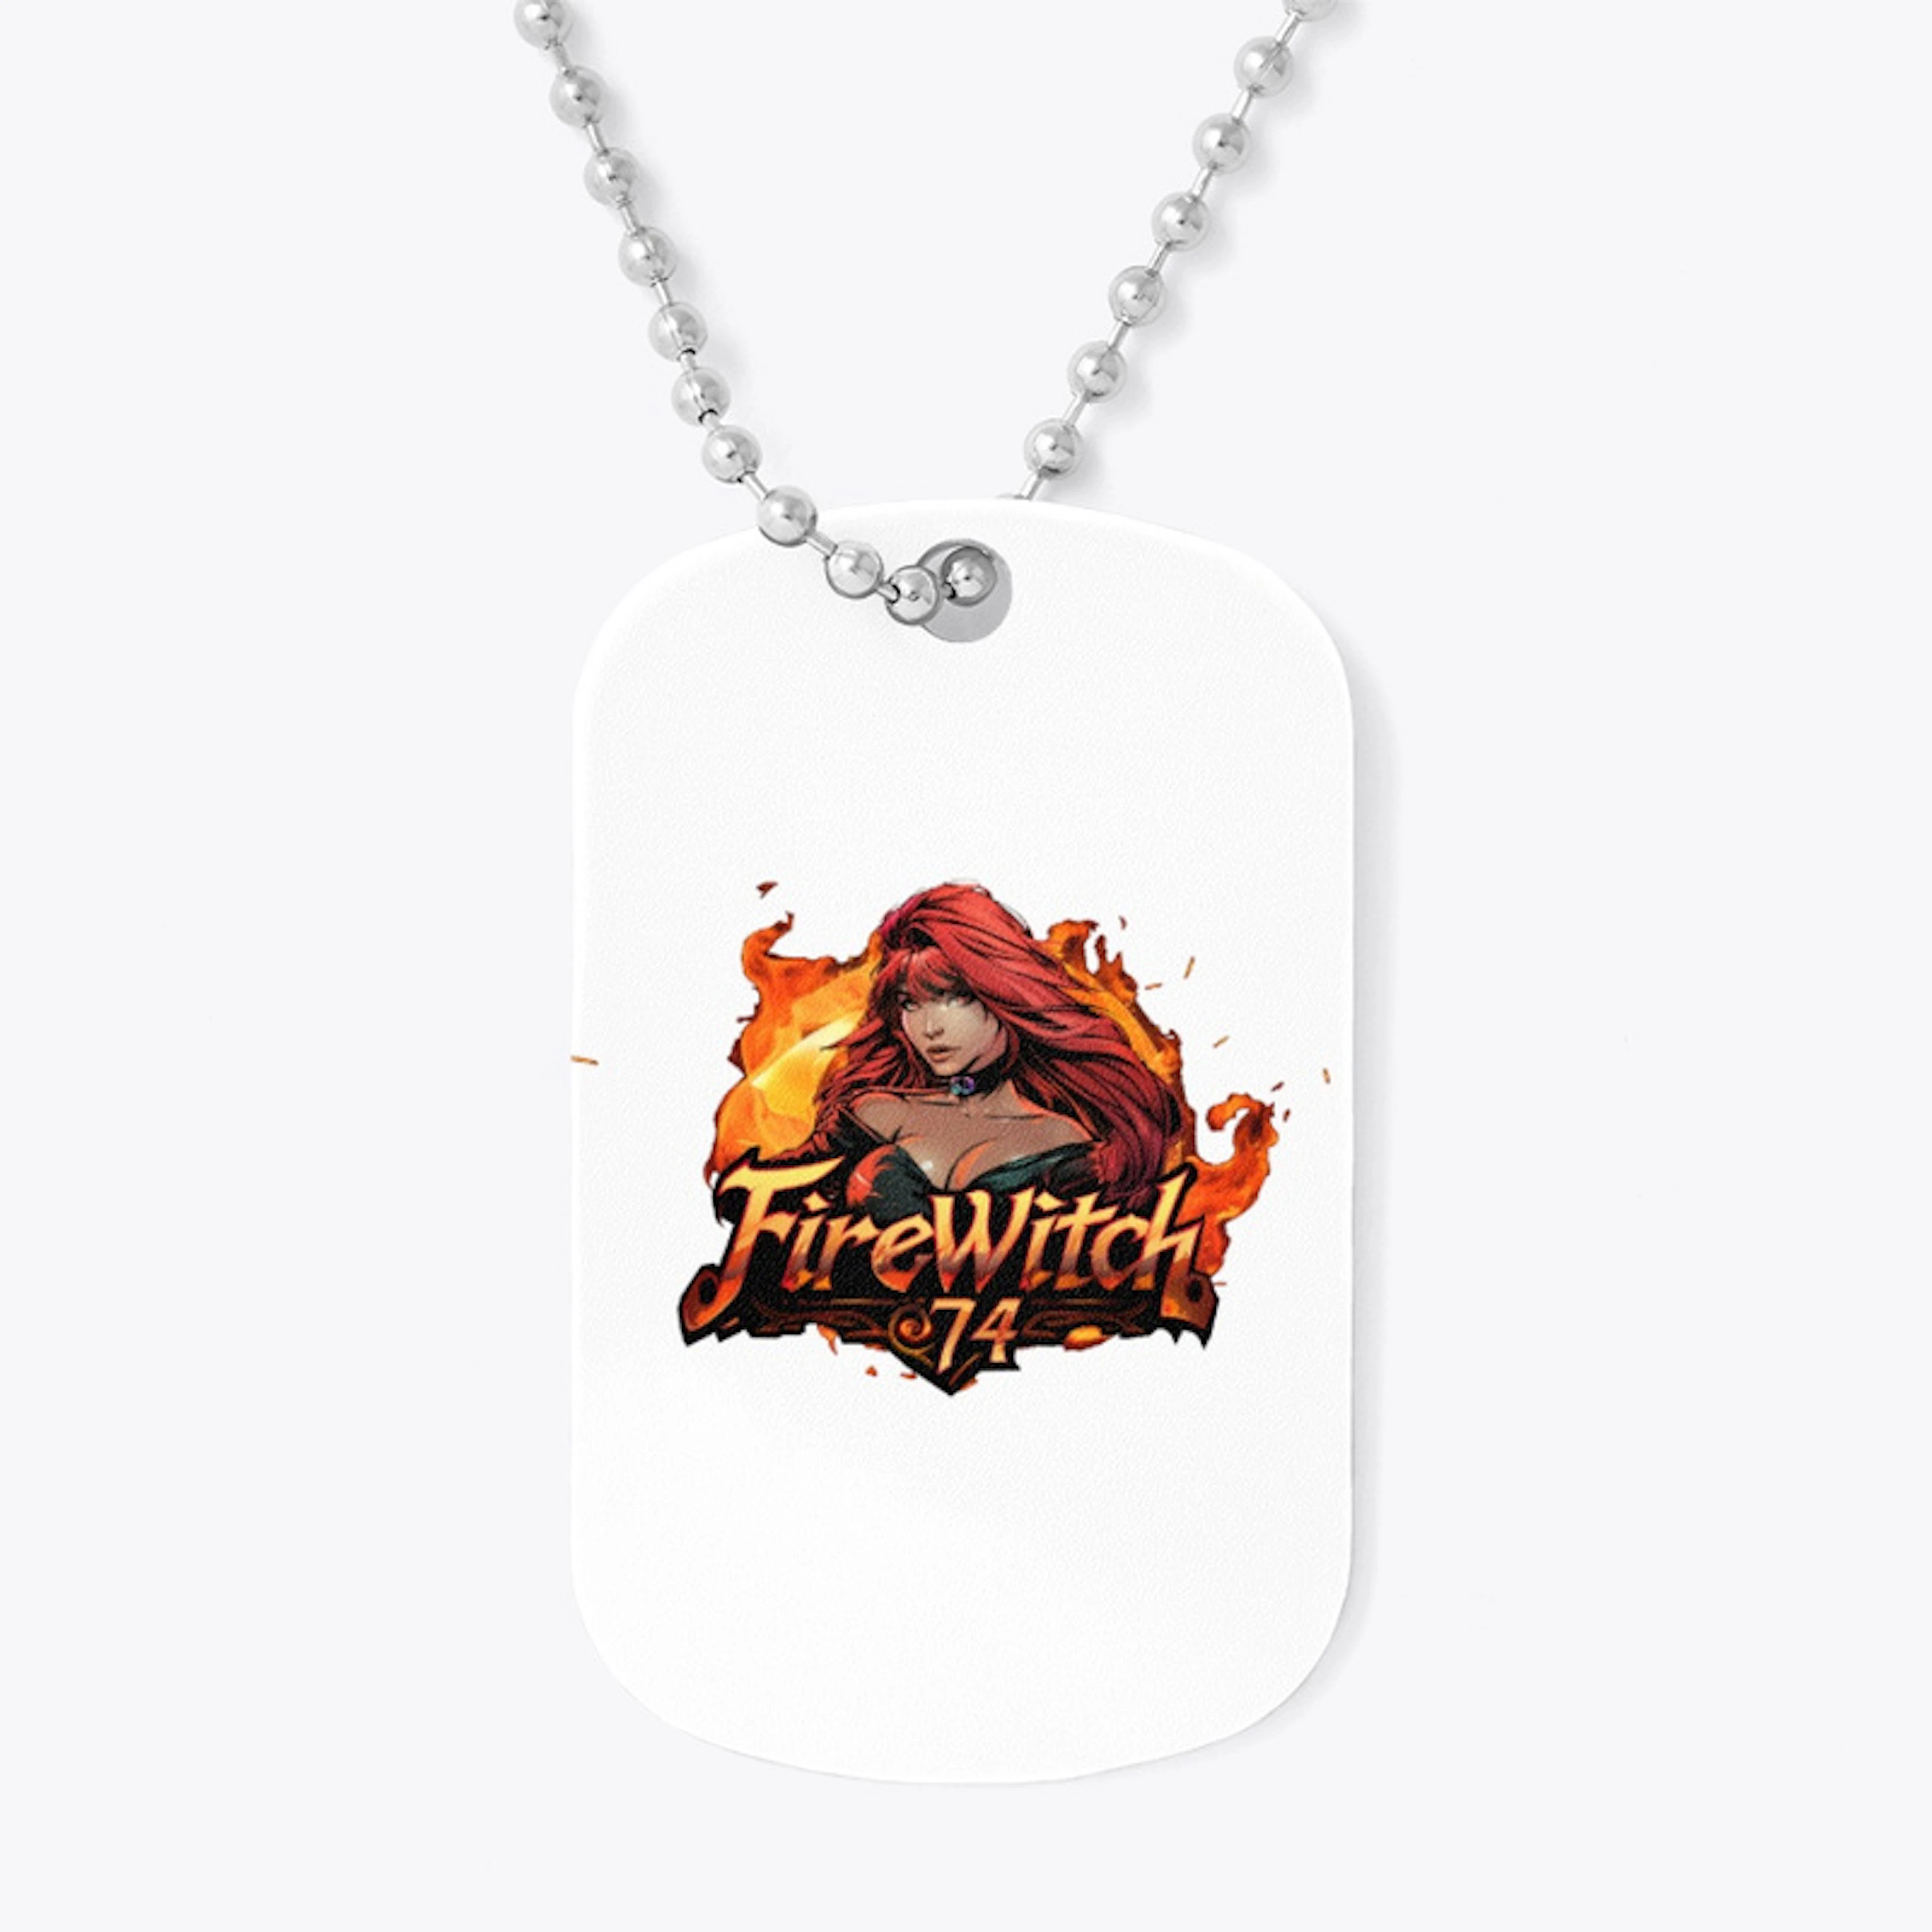 Firewitch74 Logo